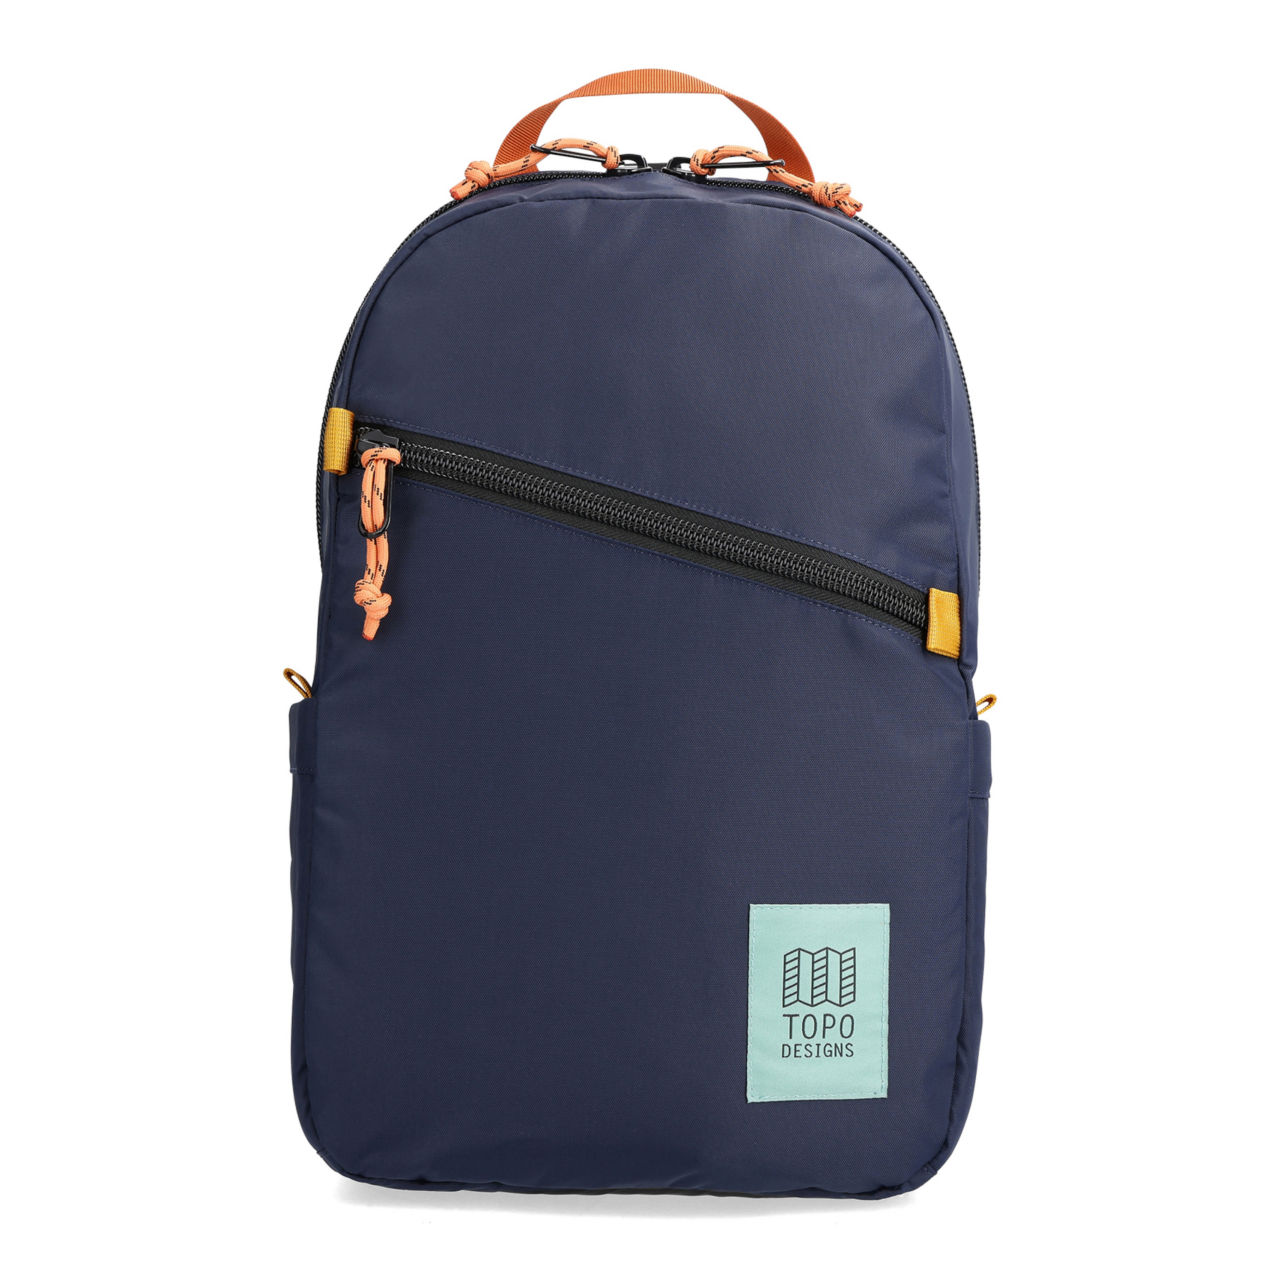 Topo Designs 15L Light Backpack - NAVY MULTI image number 0